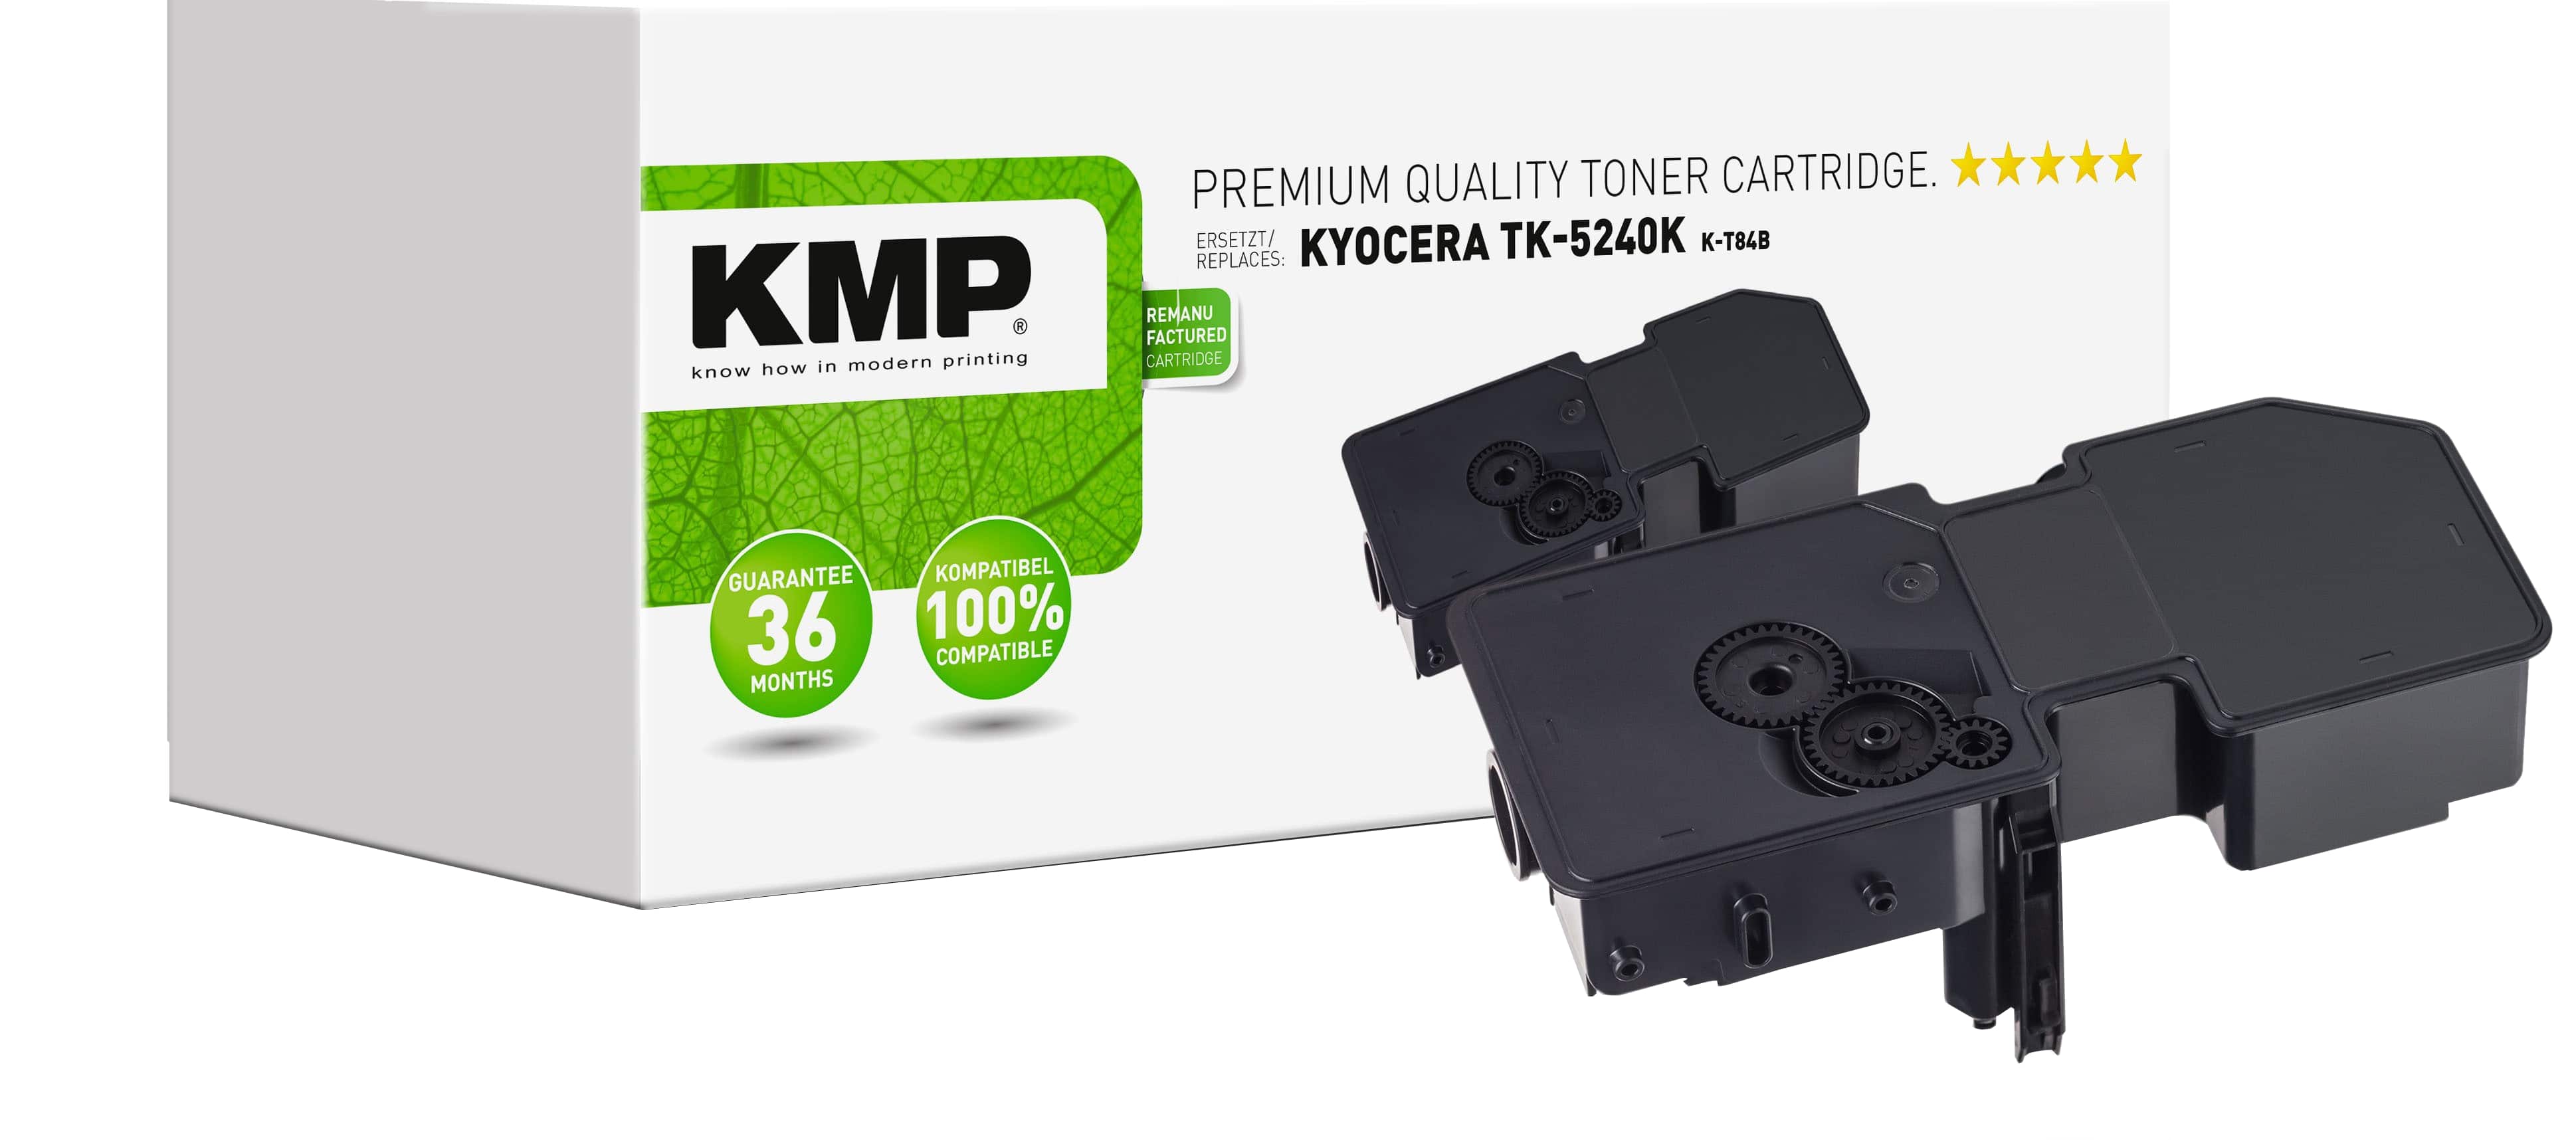 KMP Tonerkartusche K-T84B ersetzt Kyocera TK-5240K